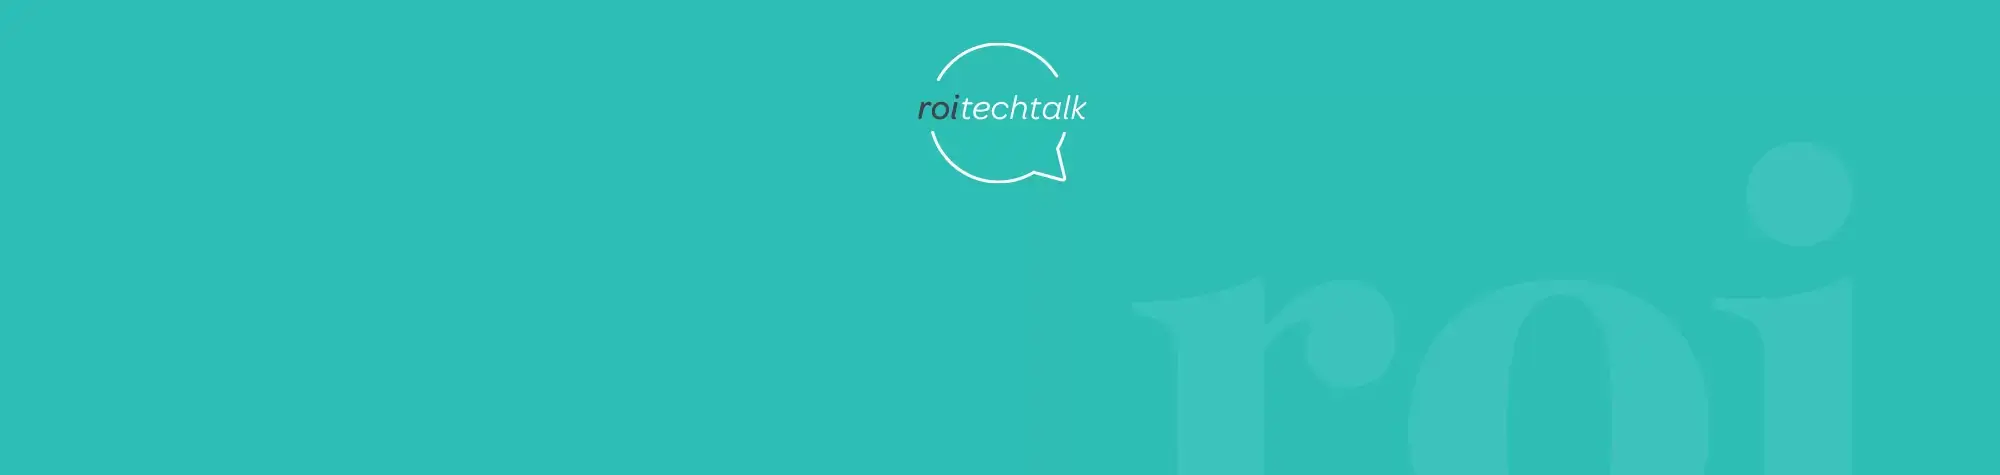 ROI Tech Talk